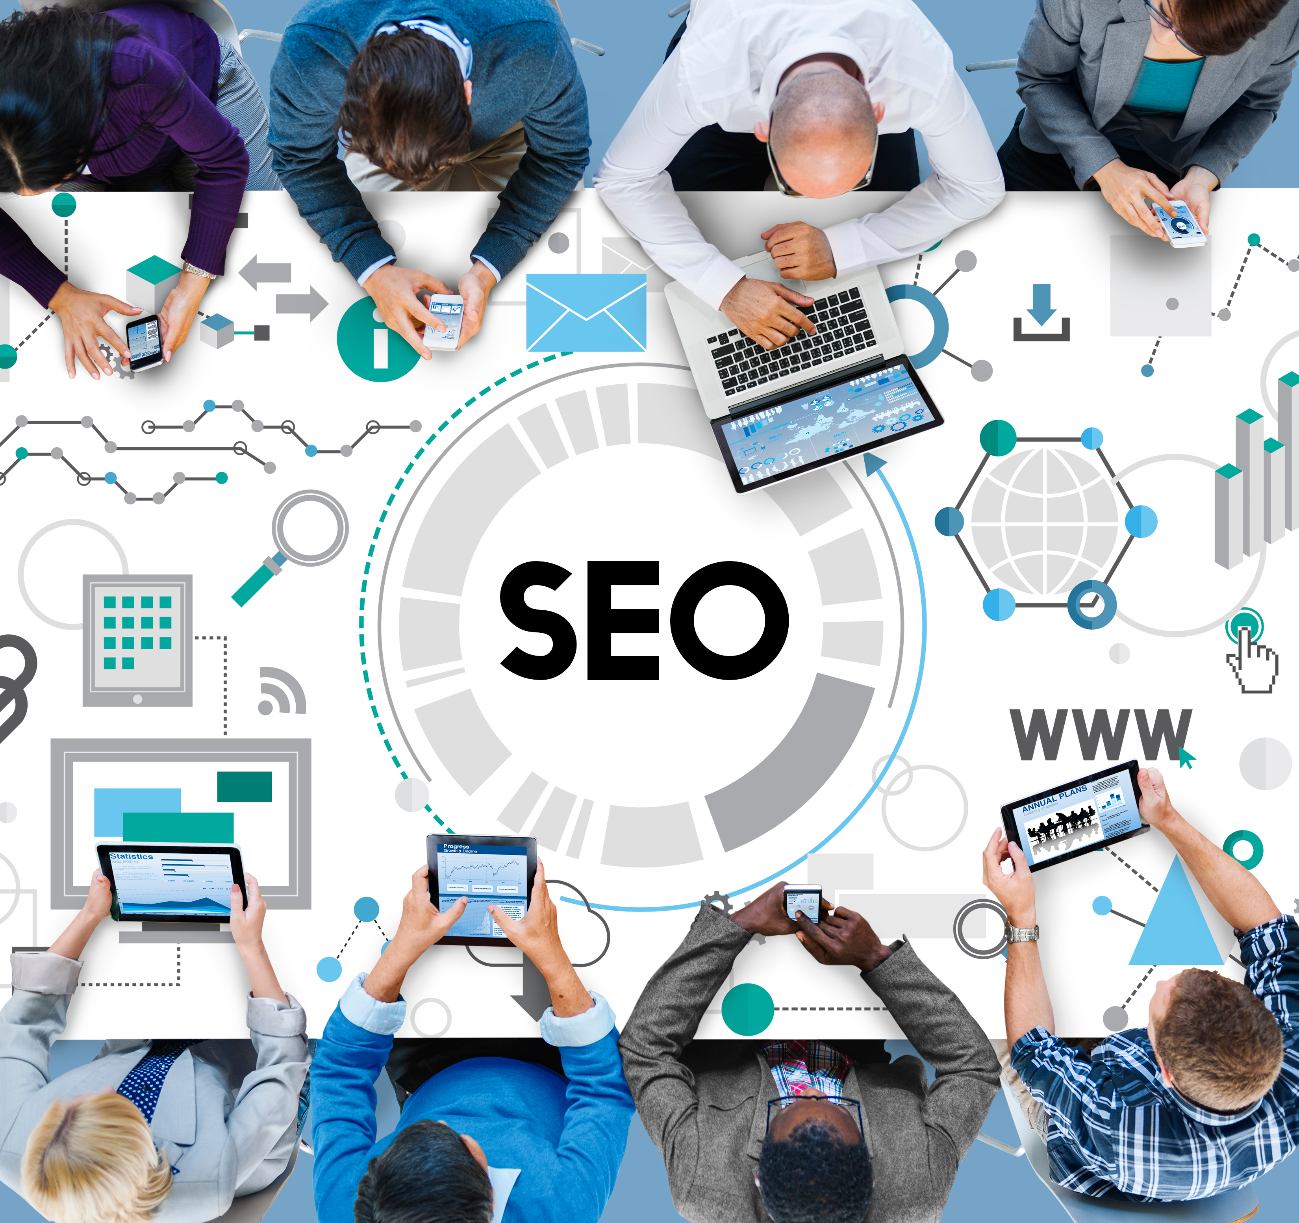 Diseño web SEO: Cómo optimizar tu sitio web para los motores de búsqueda